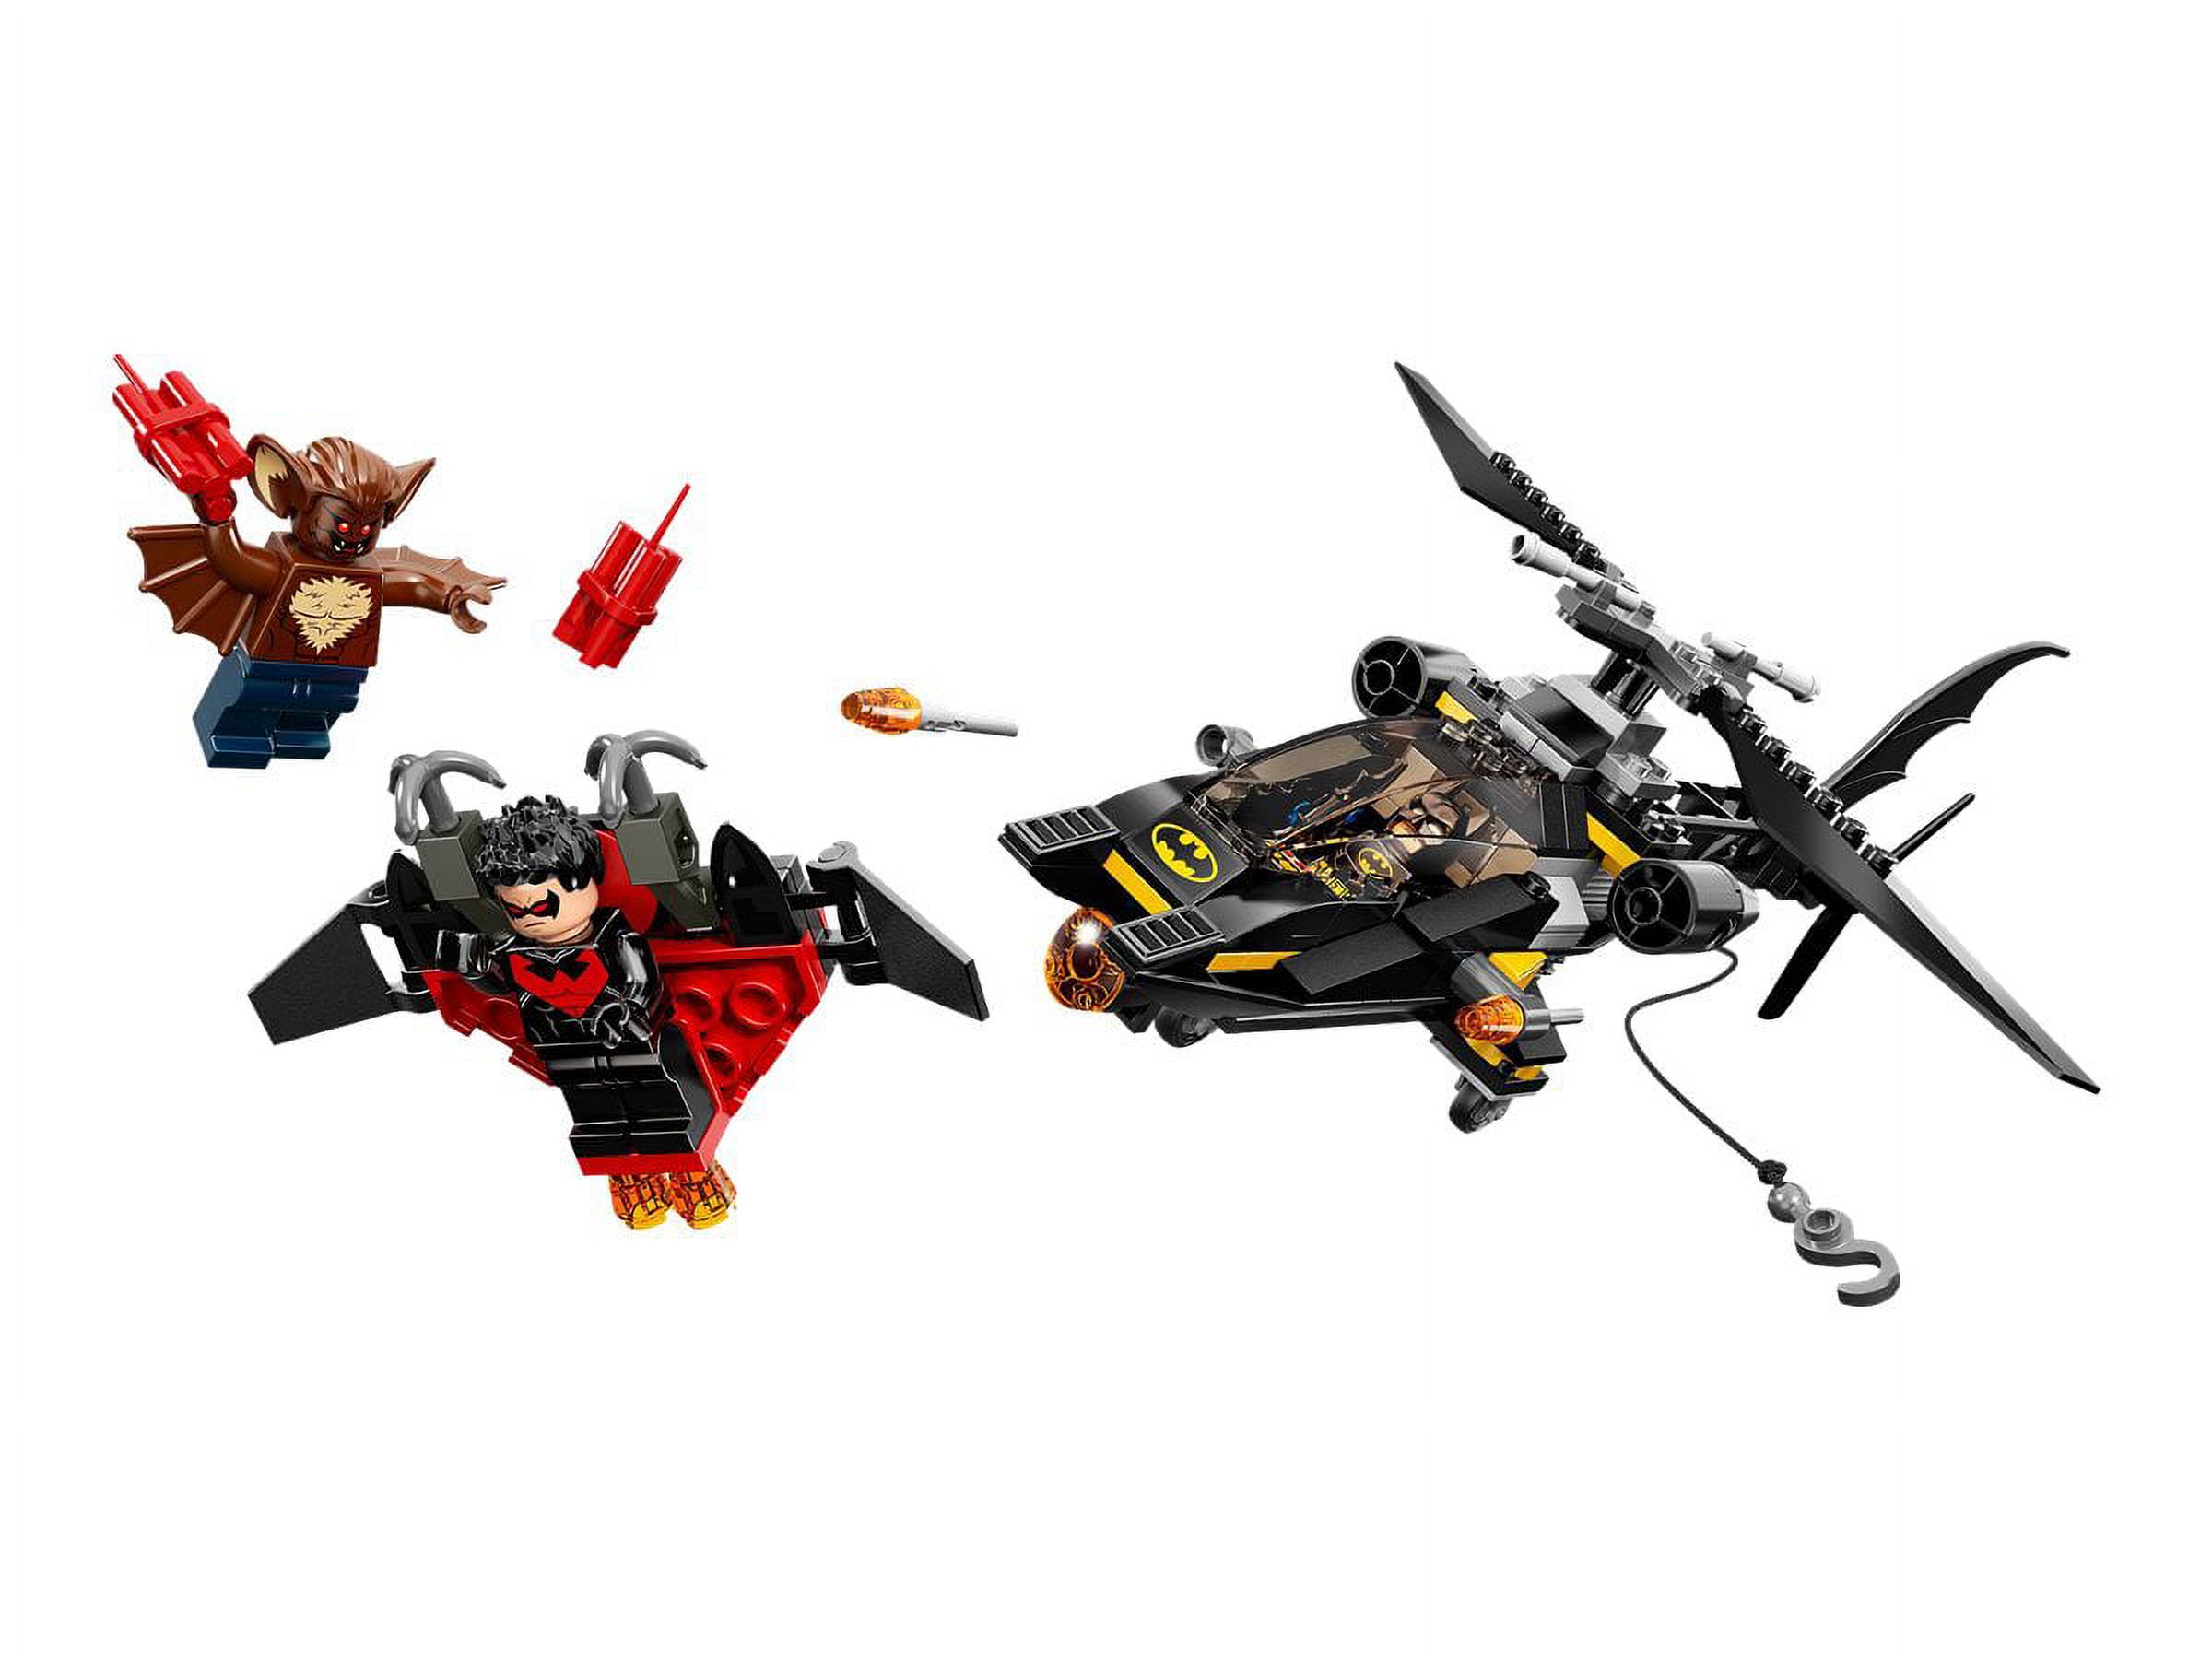 LEGO DC Comics Super Heroes 76011 - Batman: Man-Bat Attack - image 3 of 3